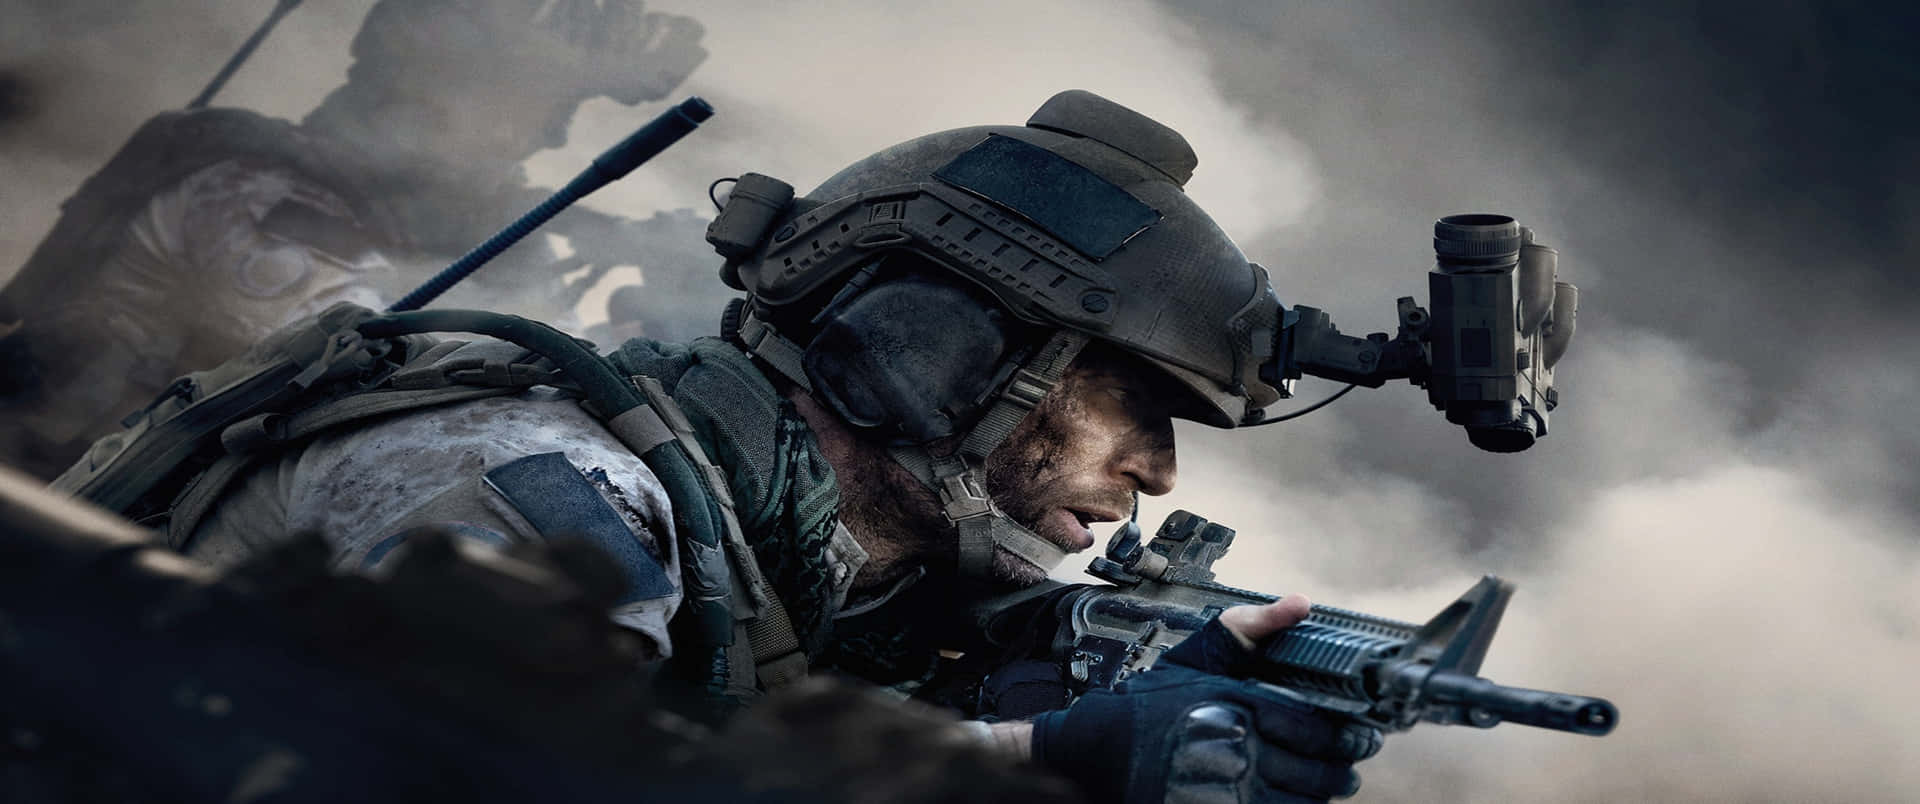 Johnnymactavish 3440x1440p Sfondo Call Of Duty Modern Warfare